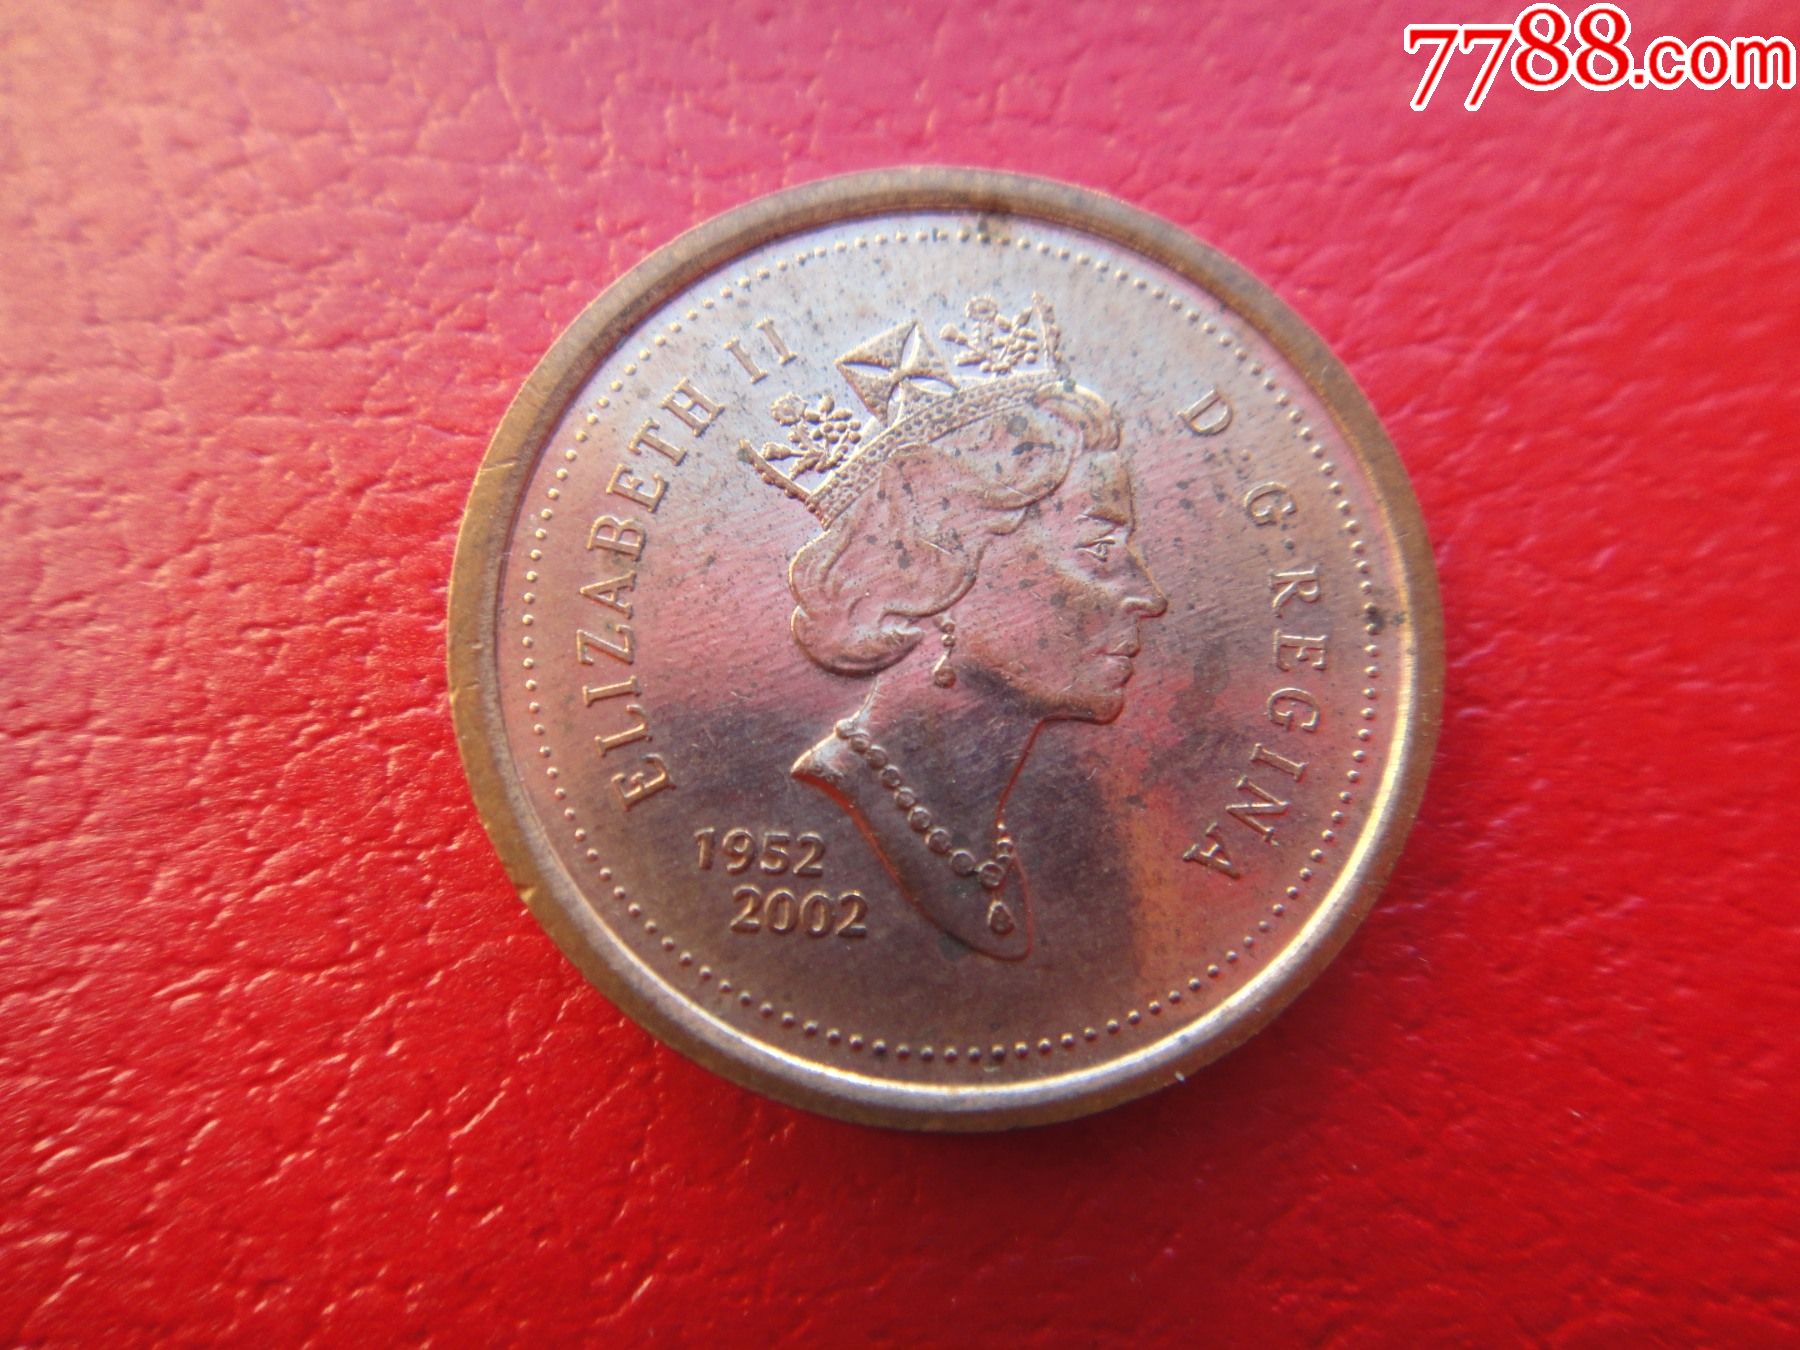 加拿大纪念币最小面值